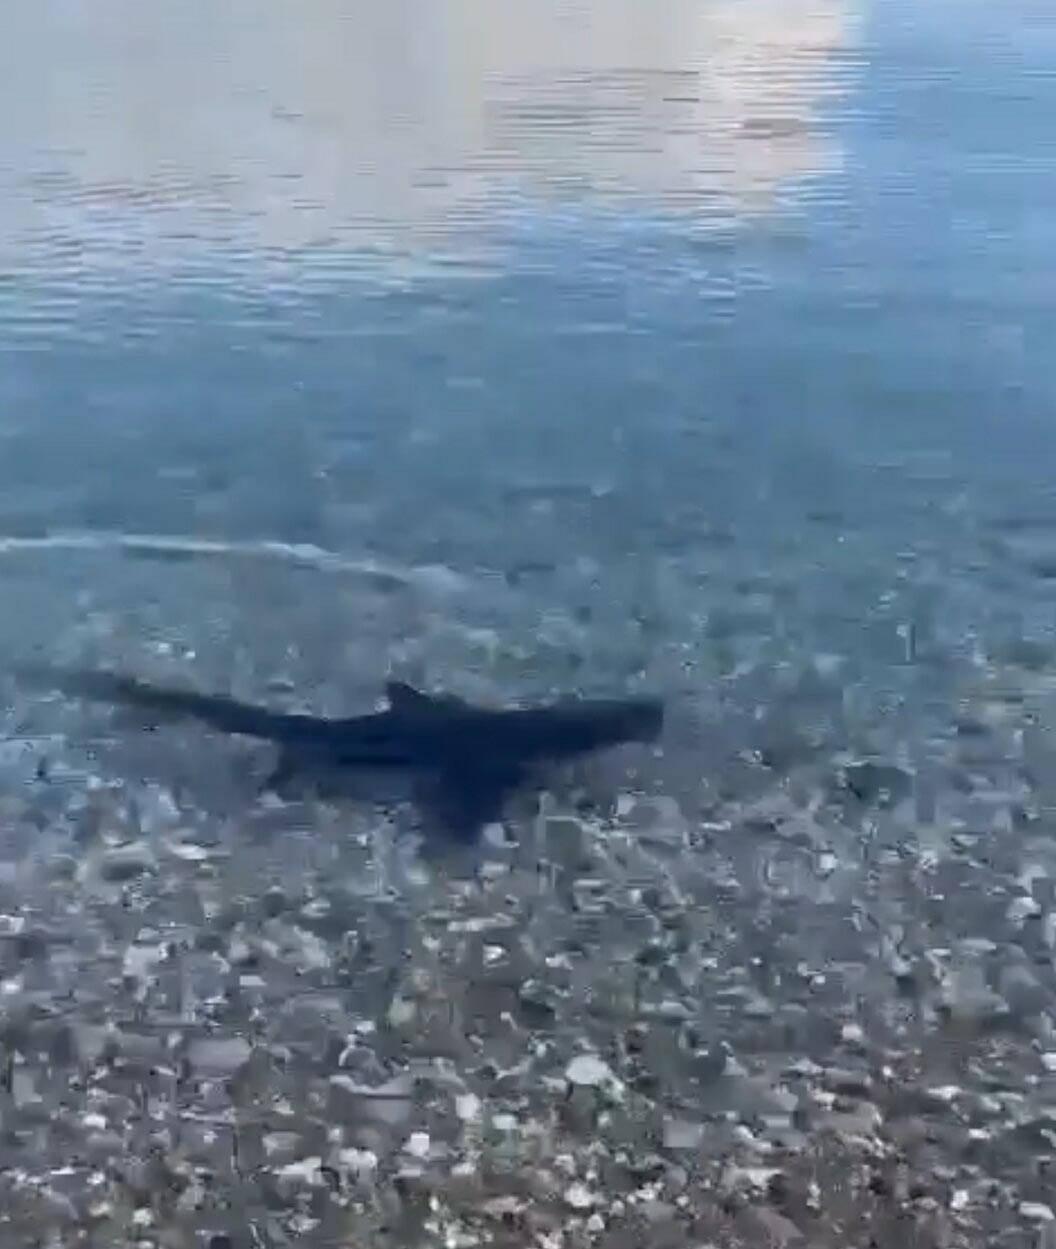 Muğla kıyılarında köpek balığı şaşkınlığı! Avlanırken görüntülendi